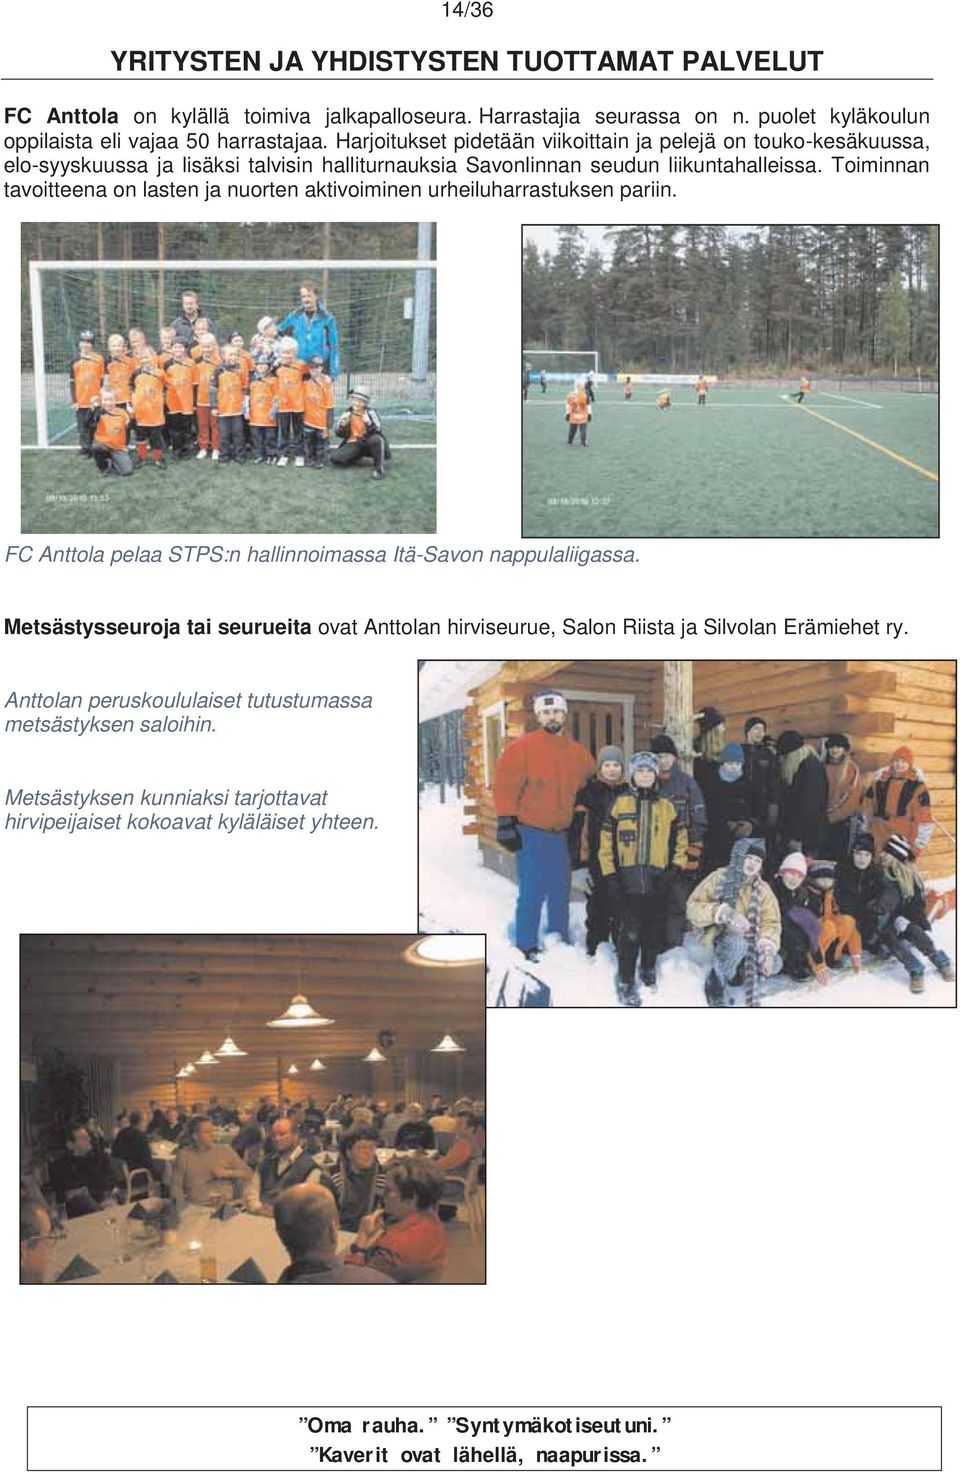 Toiminnan tavoitteena on lasten ja nuorten aktivoiminen urheiluharrastuksen pariin. FC Anttola pelaa STPS:n hallinnoimassa Itä-Savon nappulaliigassa.